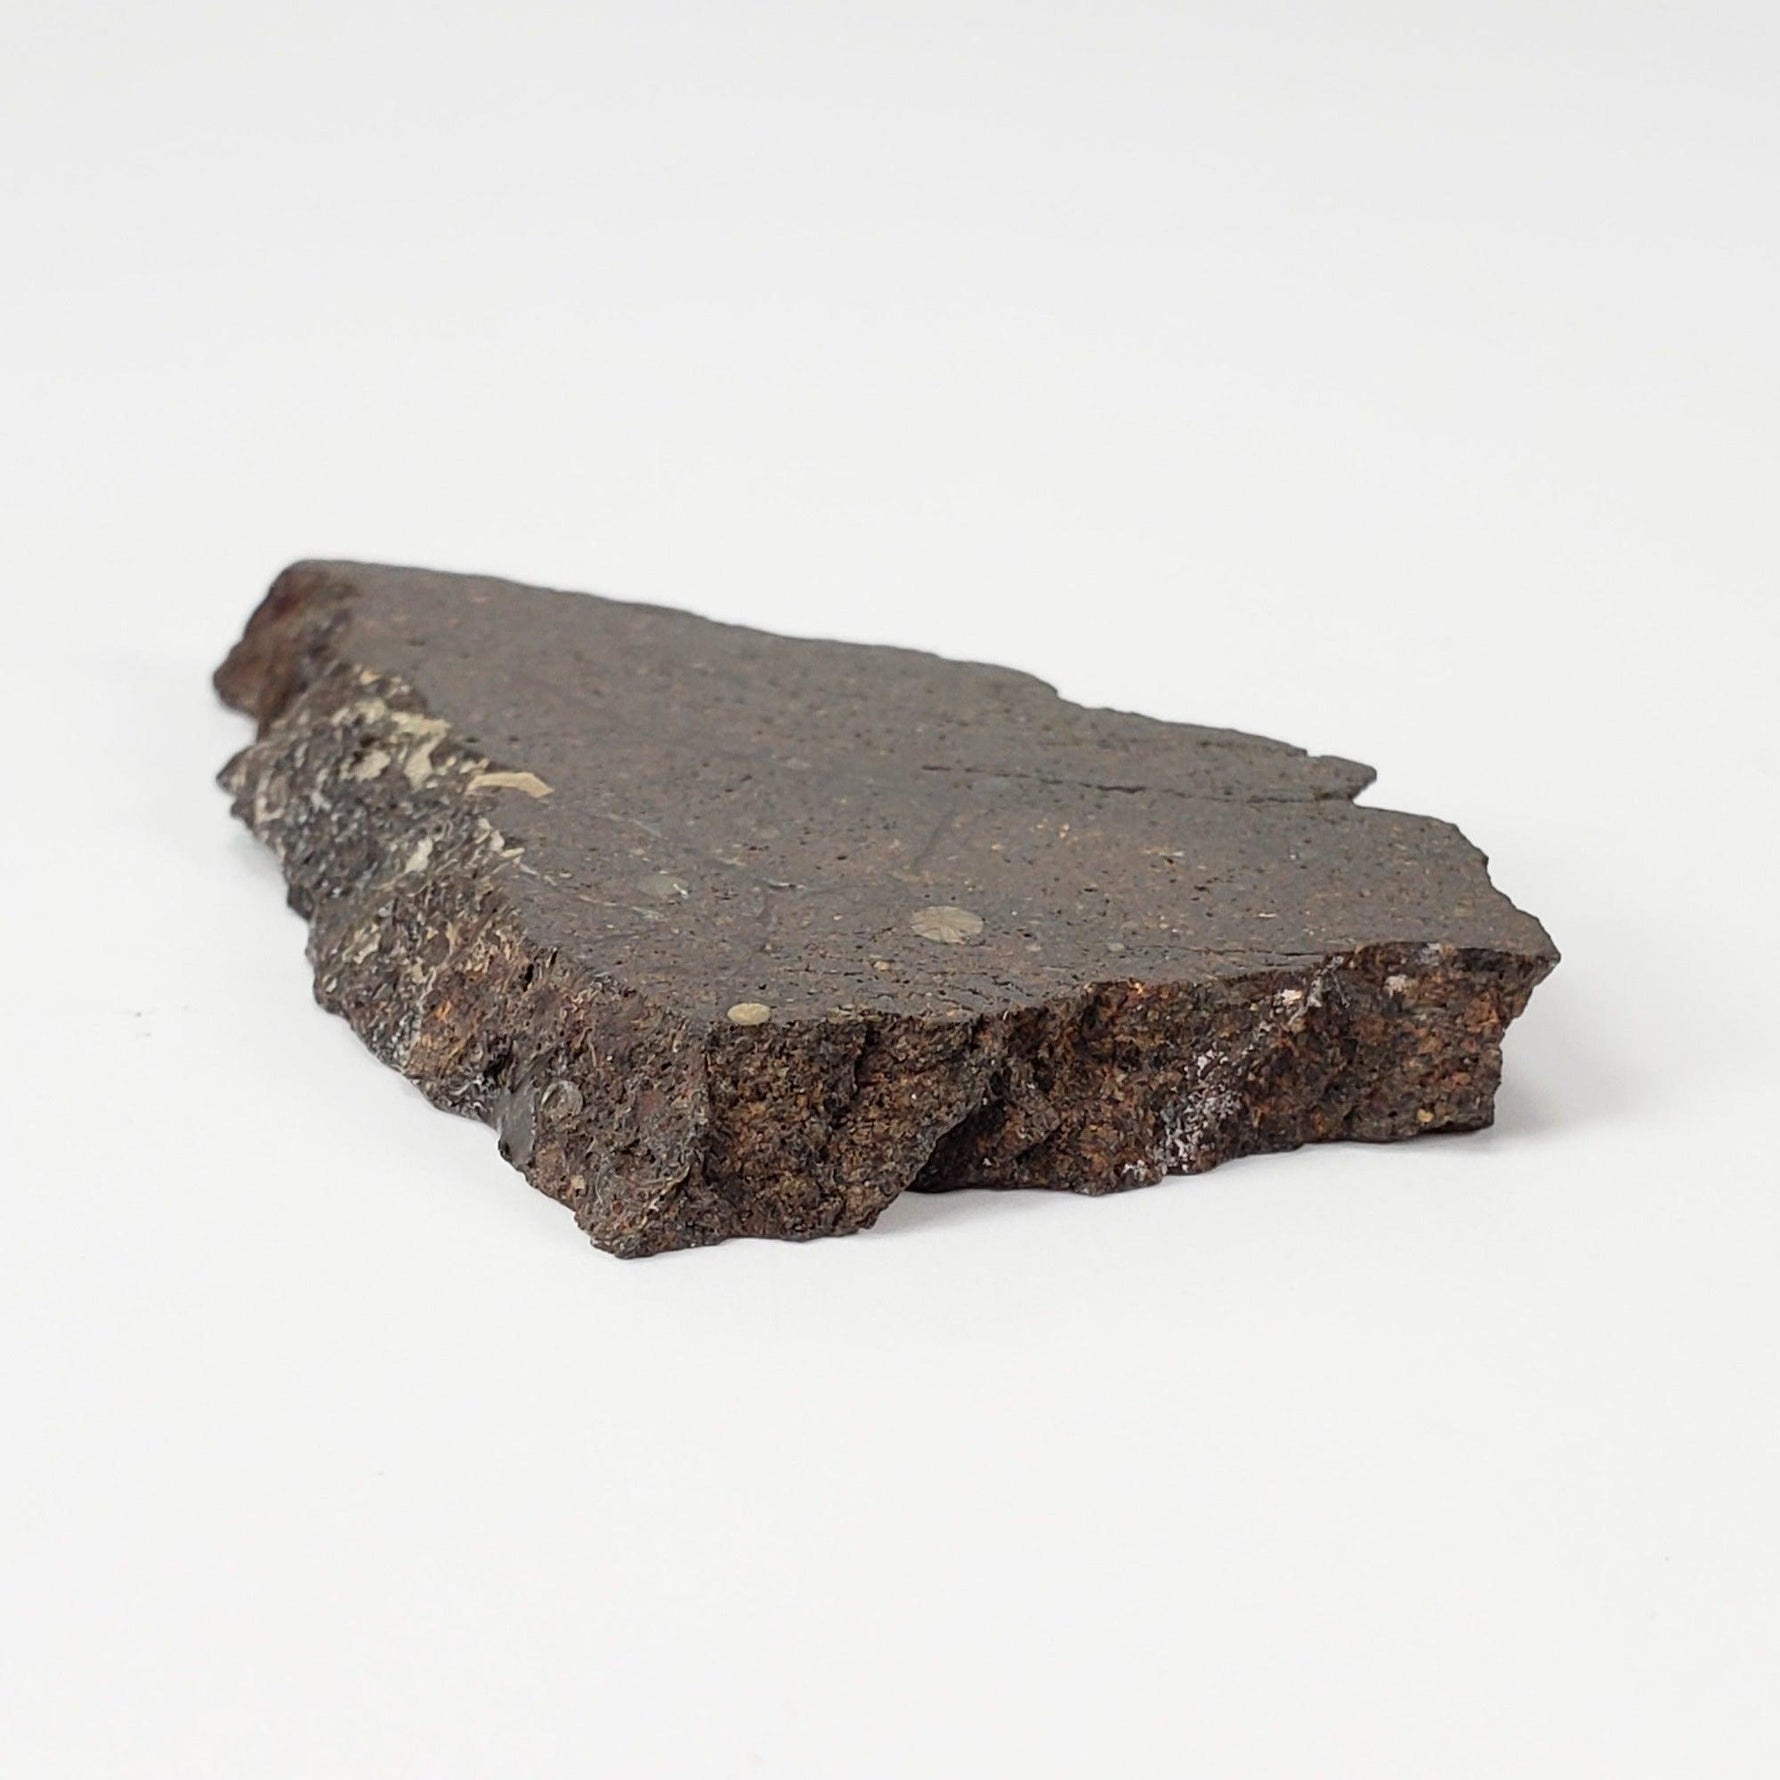 Dhofar 224 Meteorite | 23.11 Grams | Full Slice | Rare H4 Chondrite | Sahara